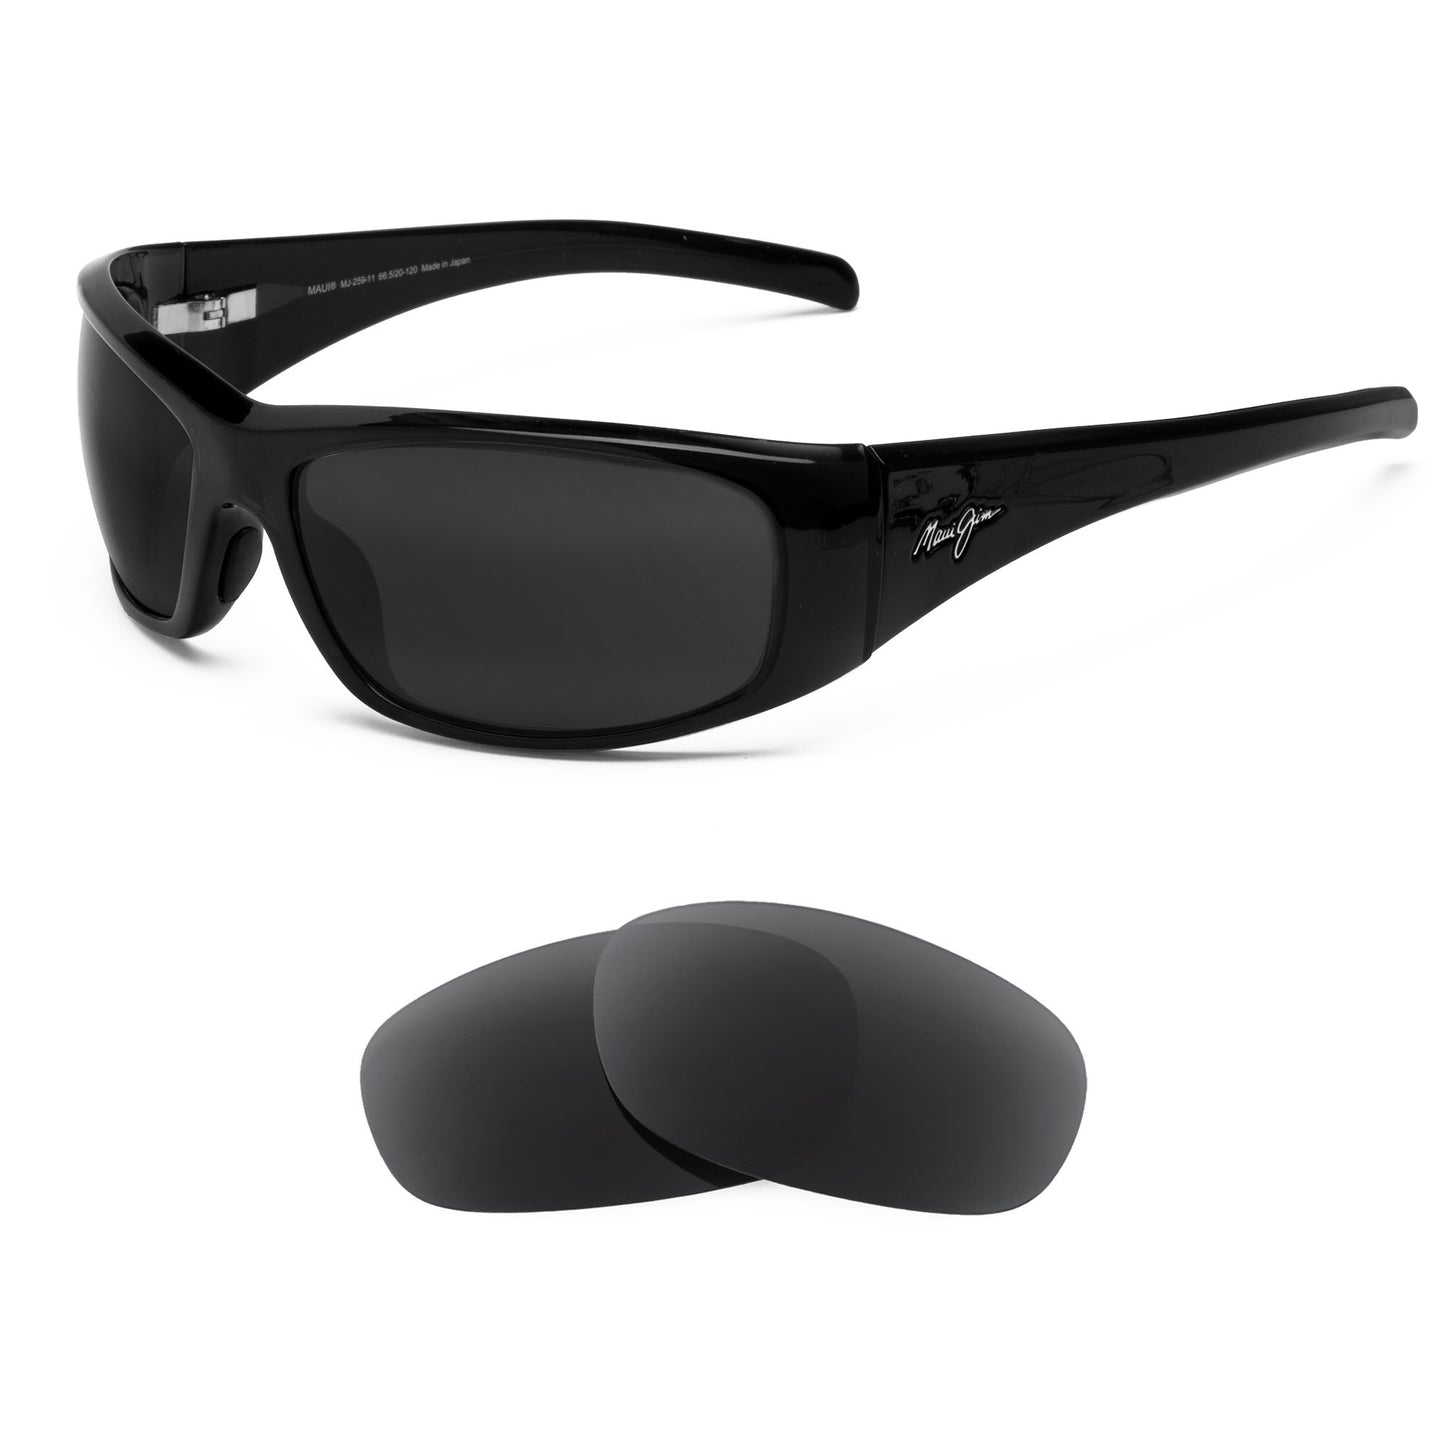 Maui Jim Dorado MJ259 sunglasses with replacement lenses